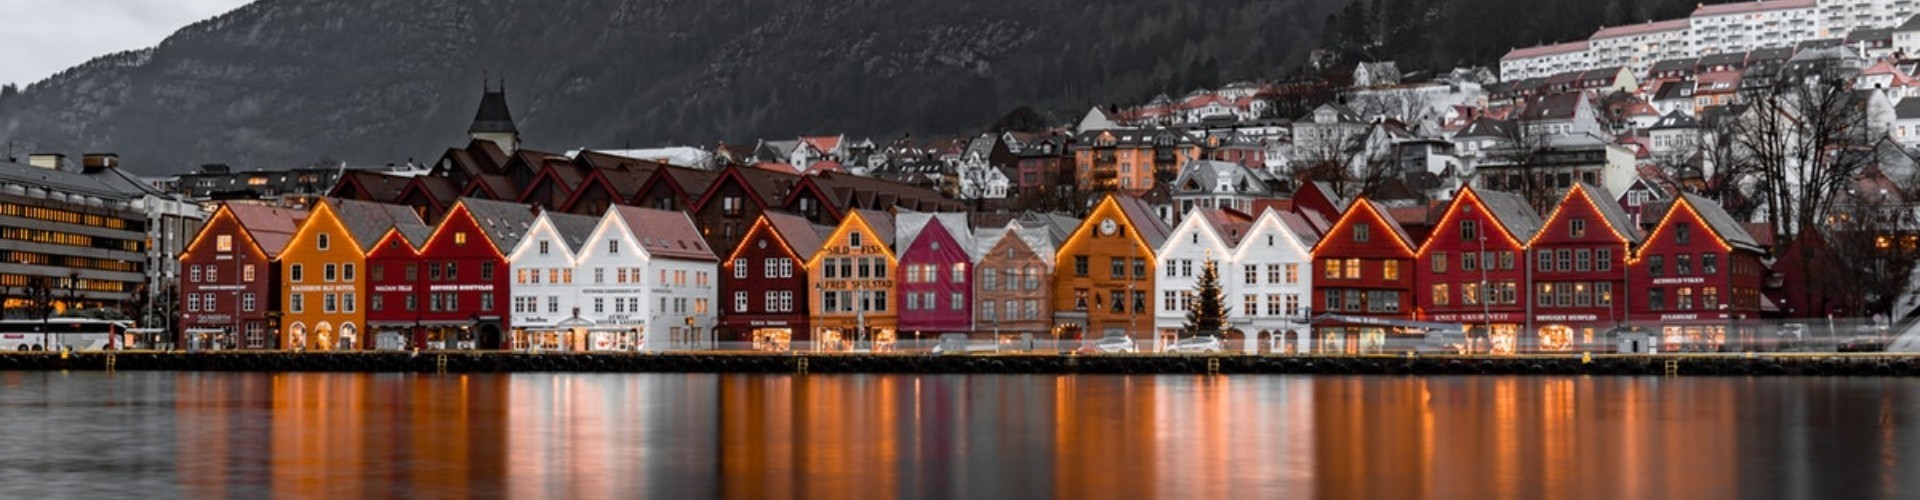 Praca w Norwegii - porady, zarobki, oferty (także dla par i bez języka)